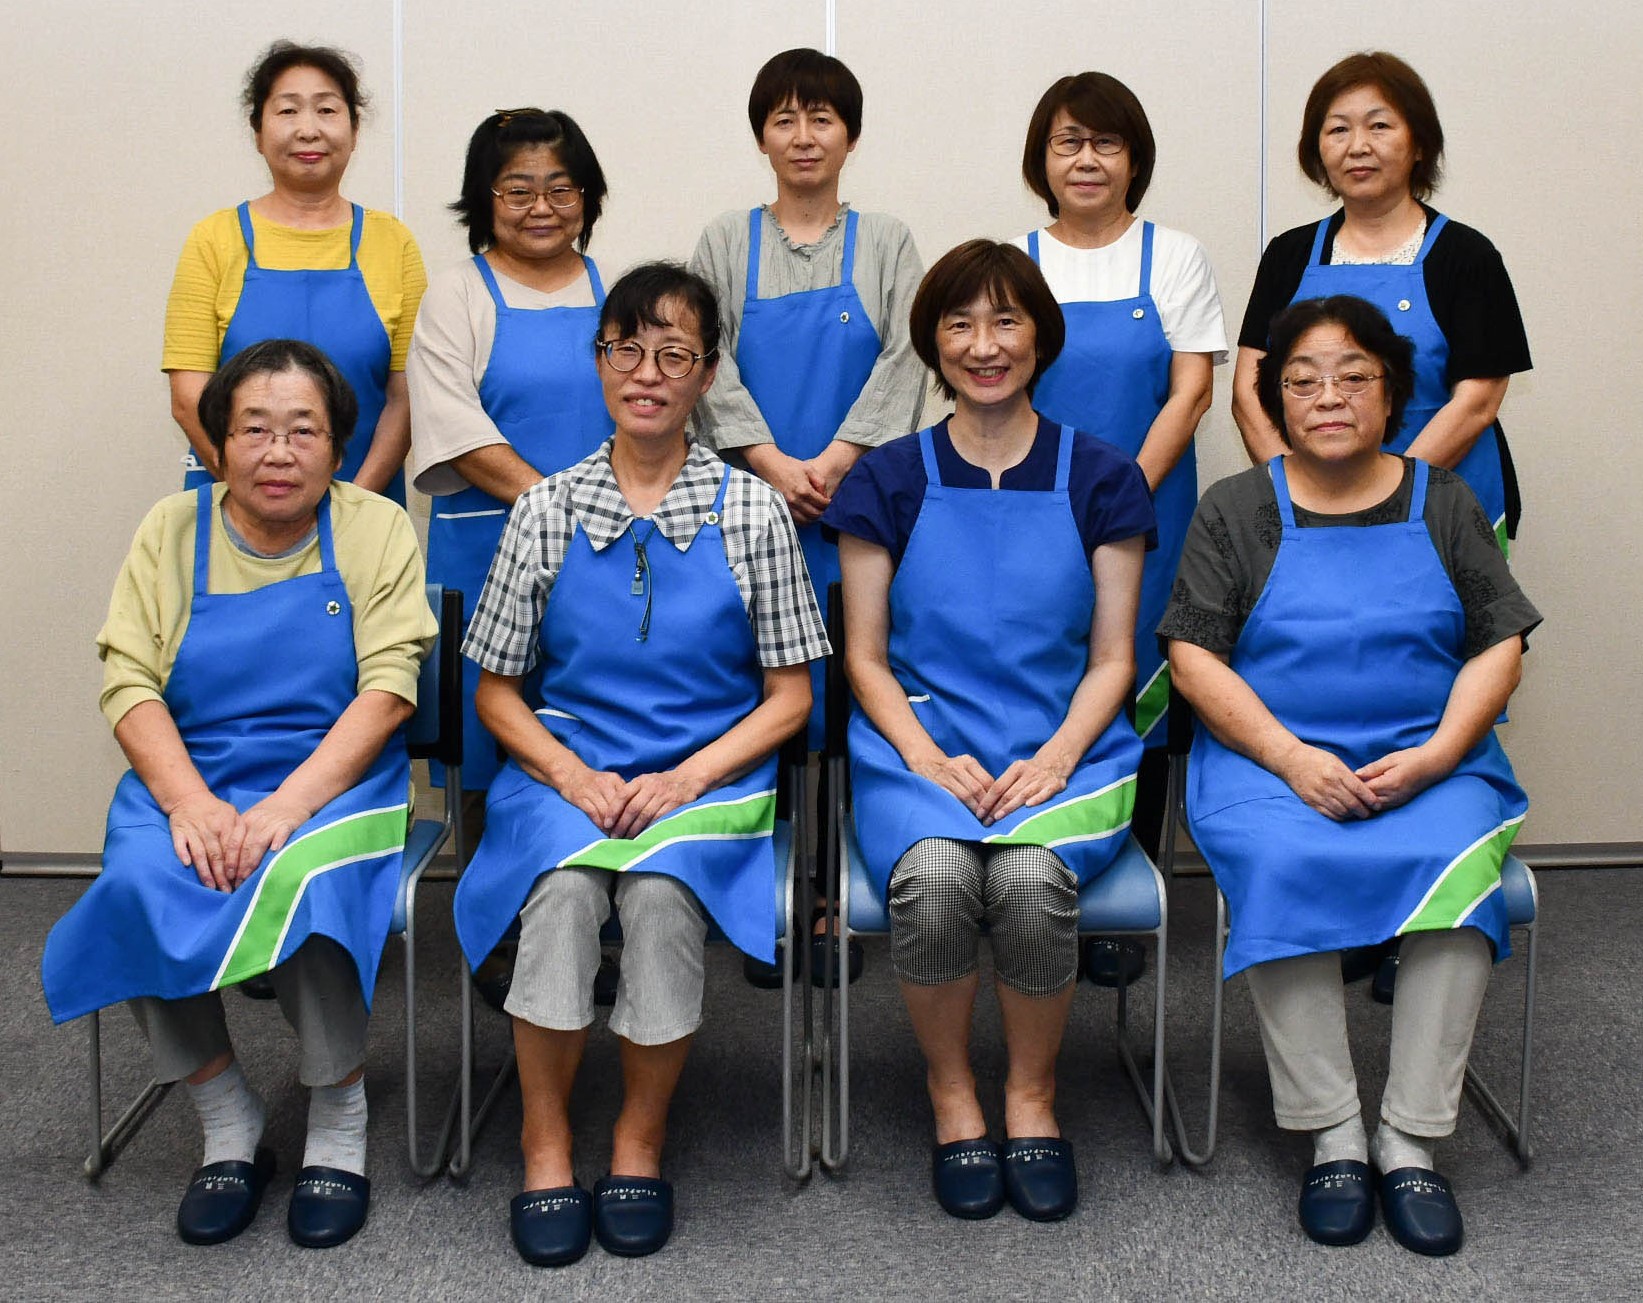 椅子に座っている米沢市三沢母子愛育班の女性9名がうつった写真